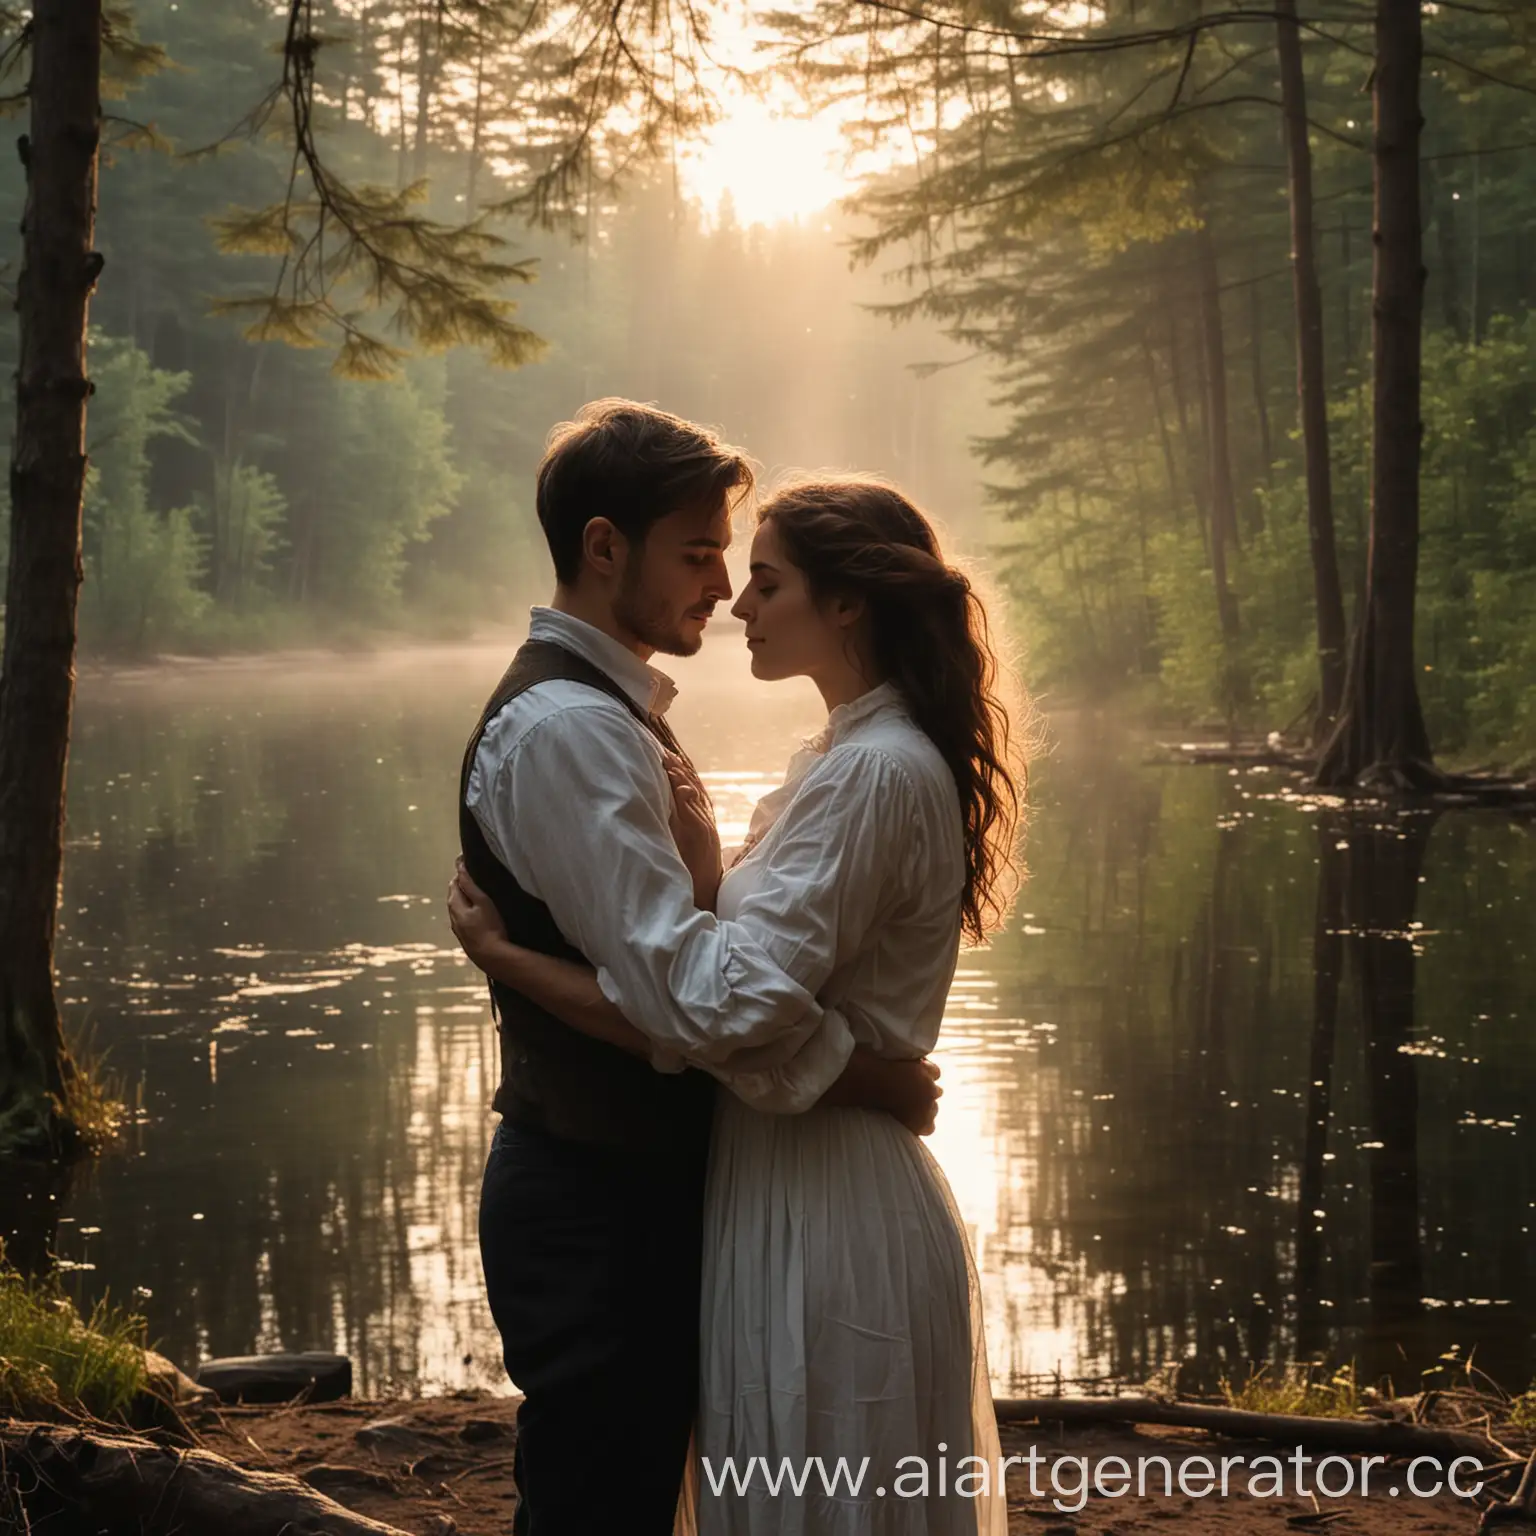 мужчина и женщина крупным планом обнимаются на берегу озера в лесу. Вечер, тишина, дует легкий ветер. 
